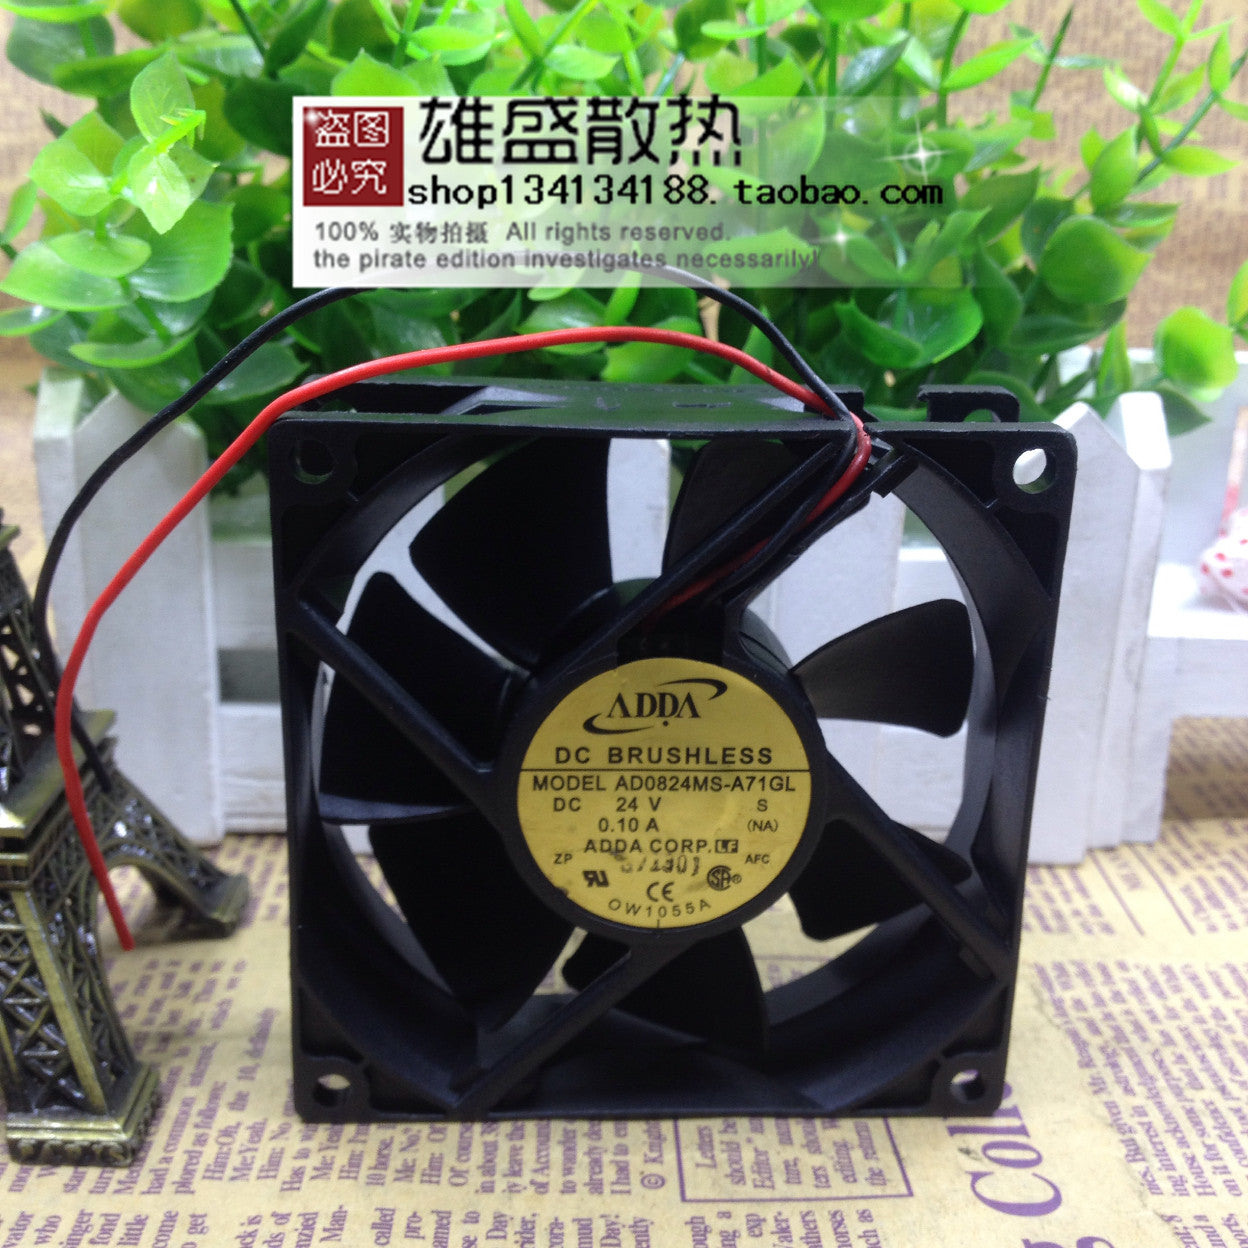 Adda Xiexi 8025 Dc24v 0.10a Ultra-Quiet Cooling Fan AD0824MS-A71GL